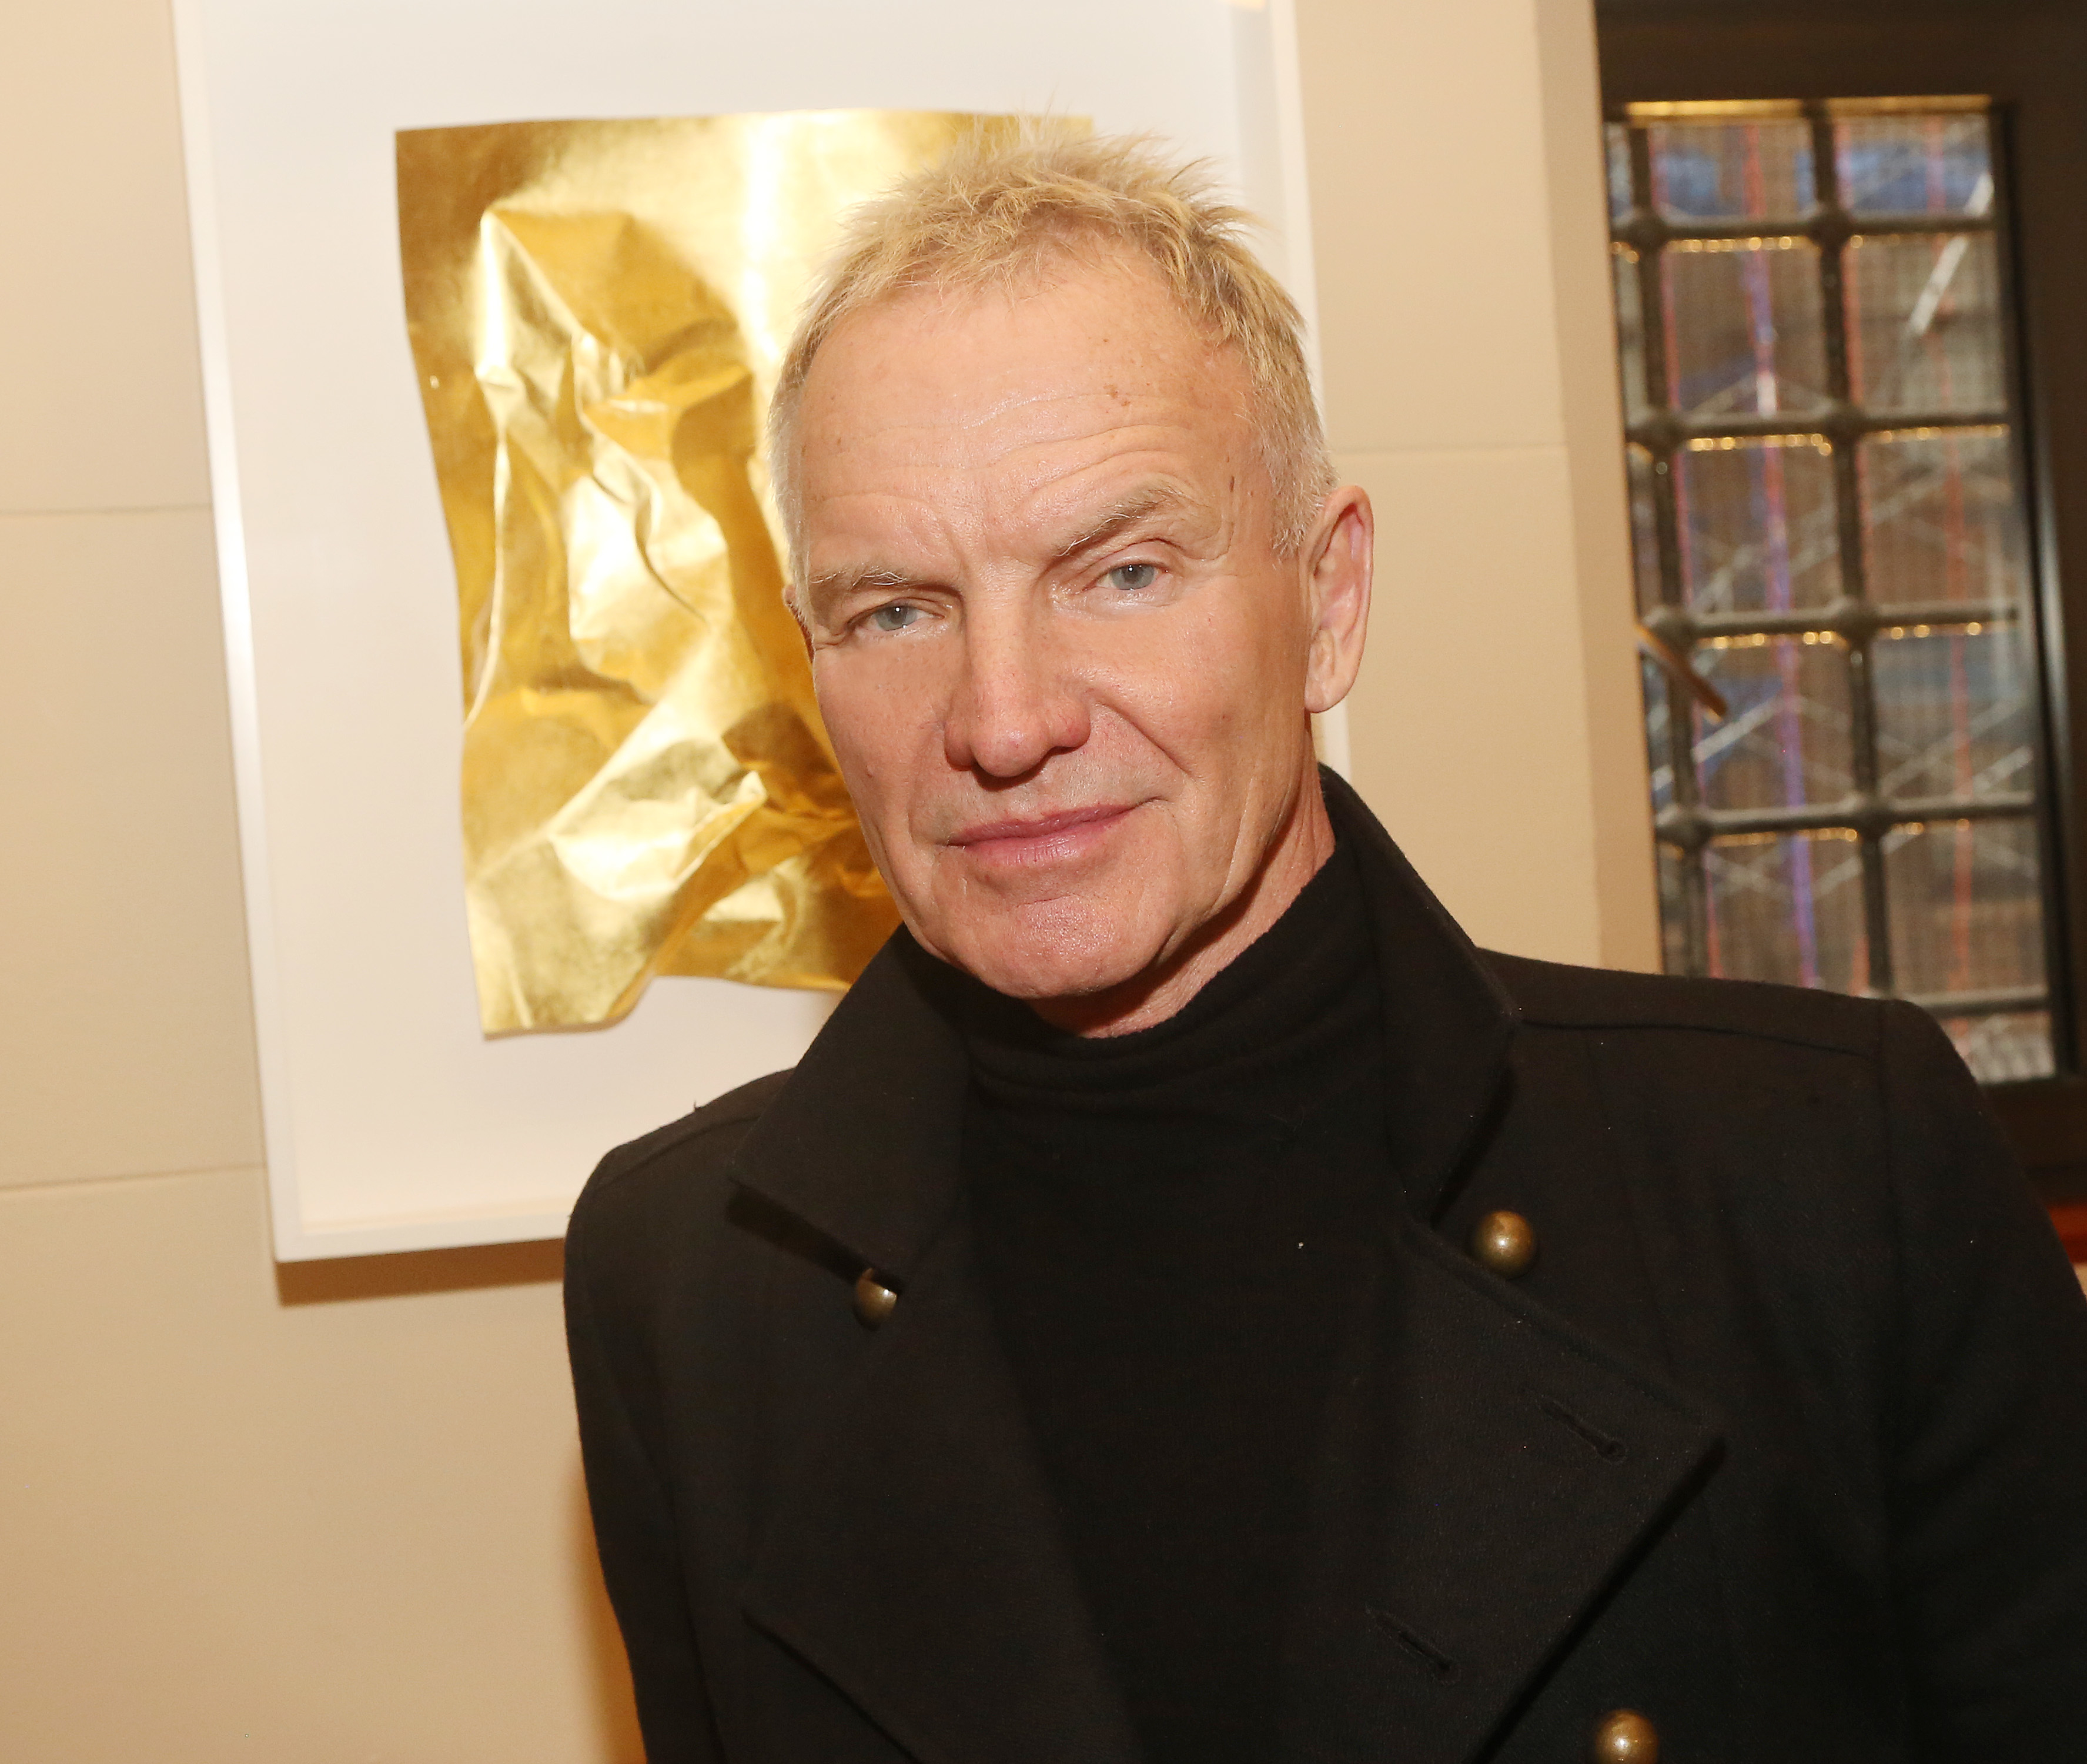 Sting, wearing a black turtleneck and black coat, stands in front of framed artwork